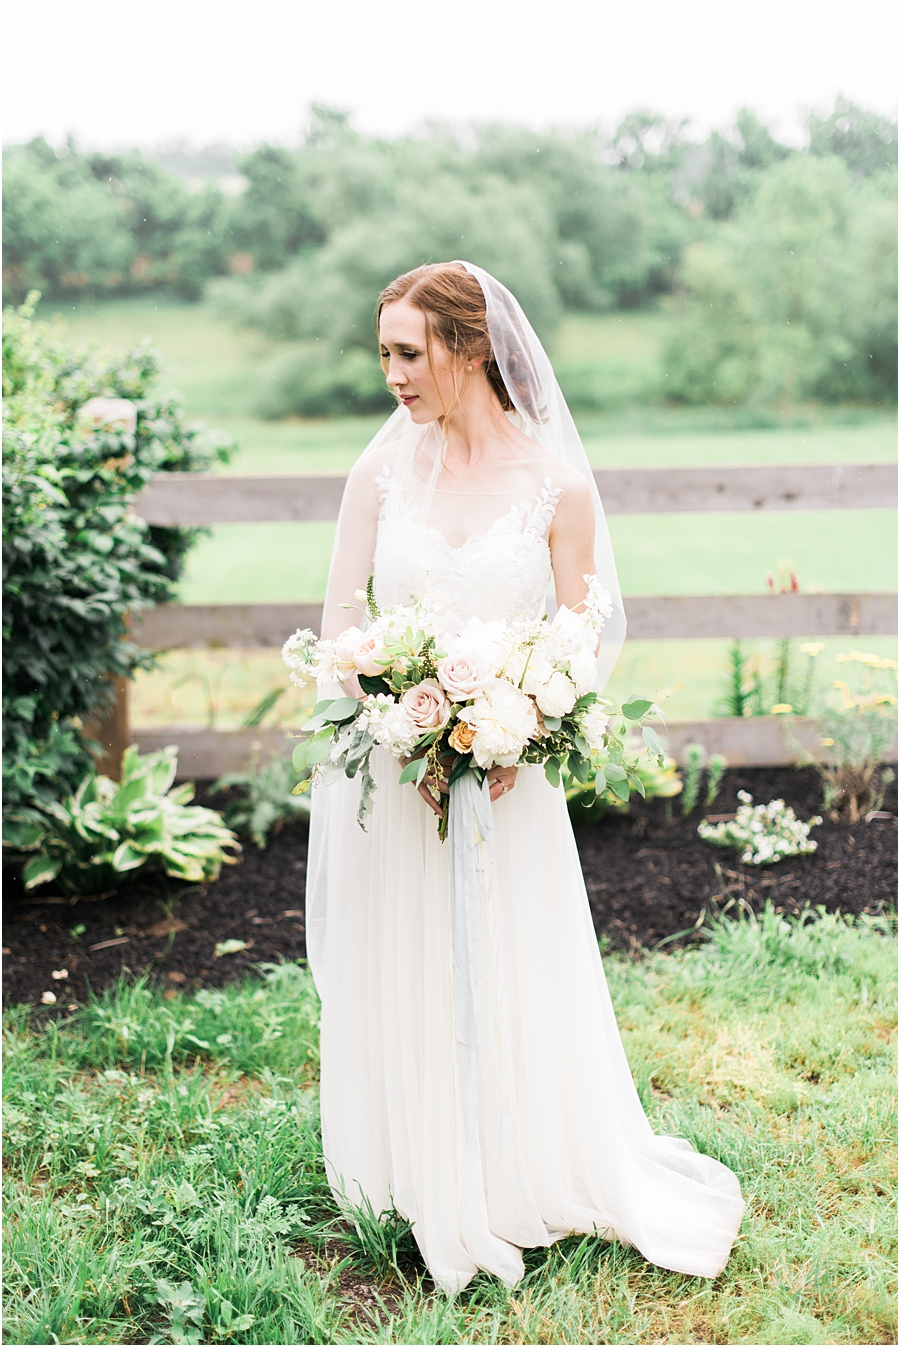 Durham Hill Farm Wedding by Film Photographer Hillary Muelleck